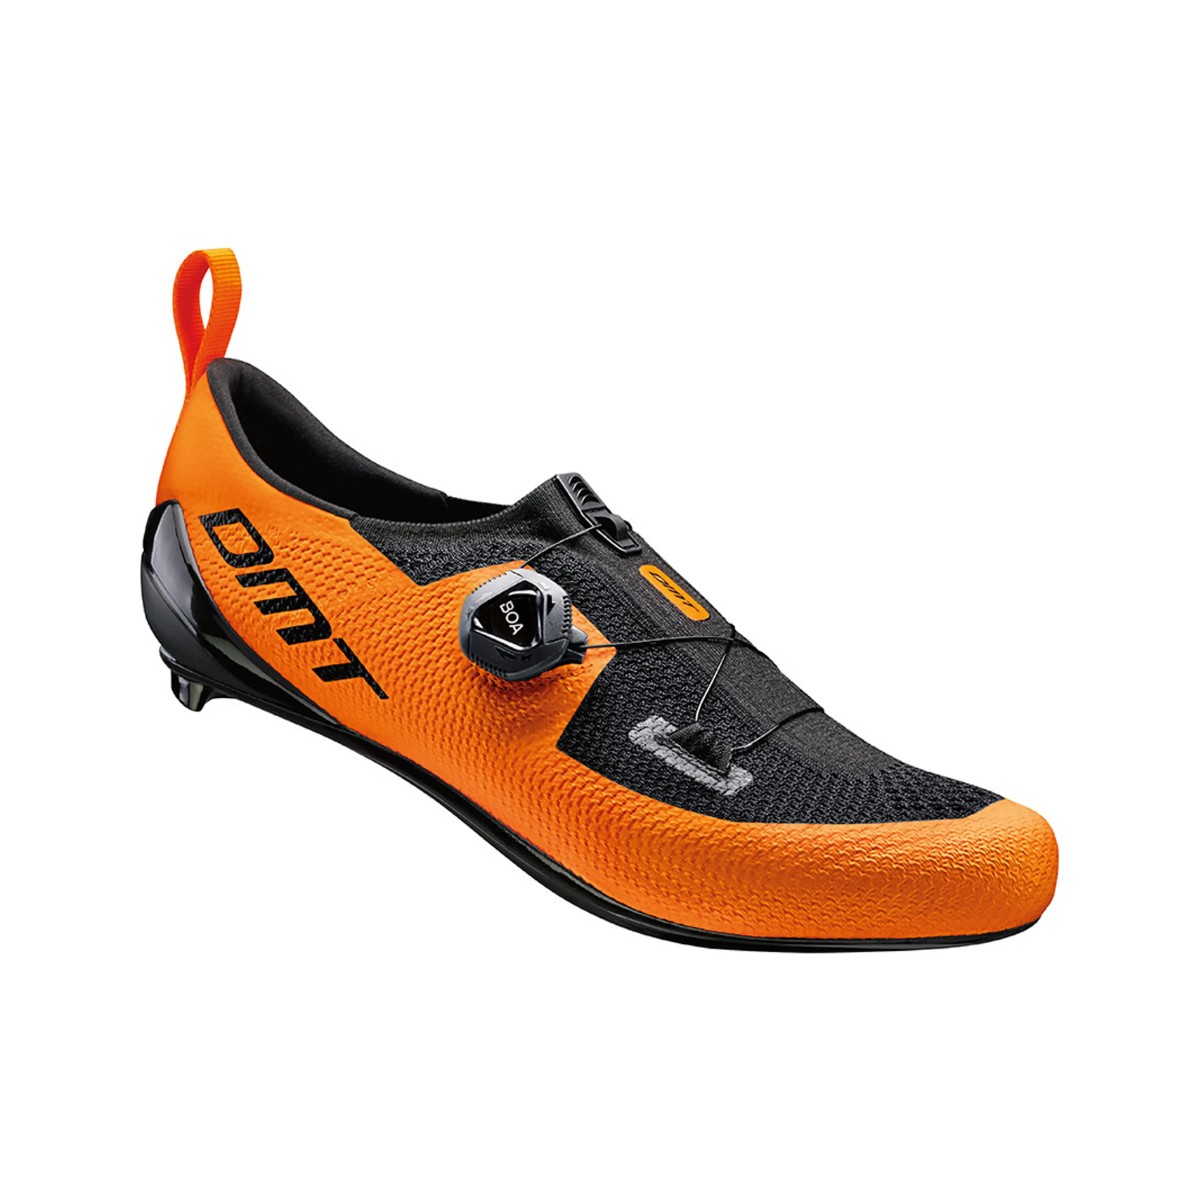 Die X günstig Kaufen-Schuhe DMT KT1 Orange Schwarz, Größe 45 - EUR. Schuhe DMT KT1 Orange Schwarz, Größe 45 - EUR <![CDATA[DMT KT1 Schuhe Orange Schwarz
 Die Konstruktion des gewebten KT1-Schuhs eignet sich perfekt für Triathleten und bietet außergewöhn